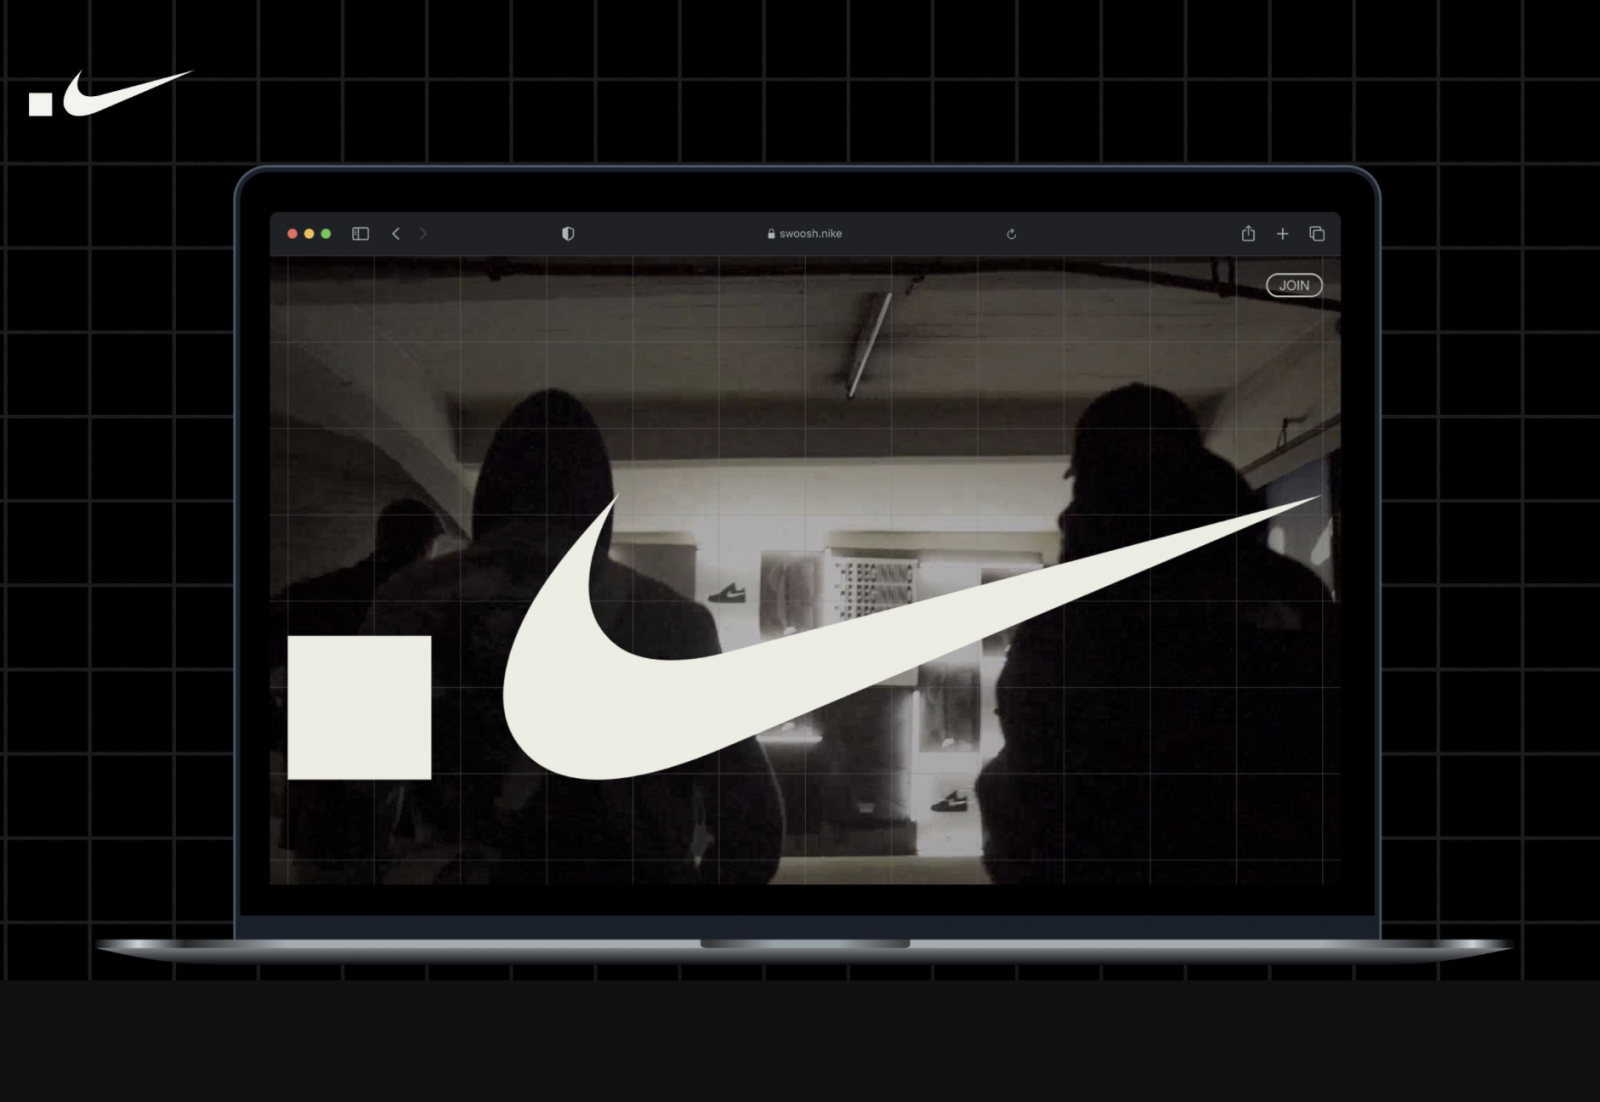 Nike .Swoosh ad